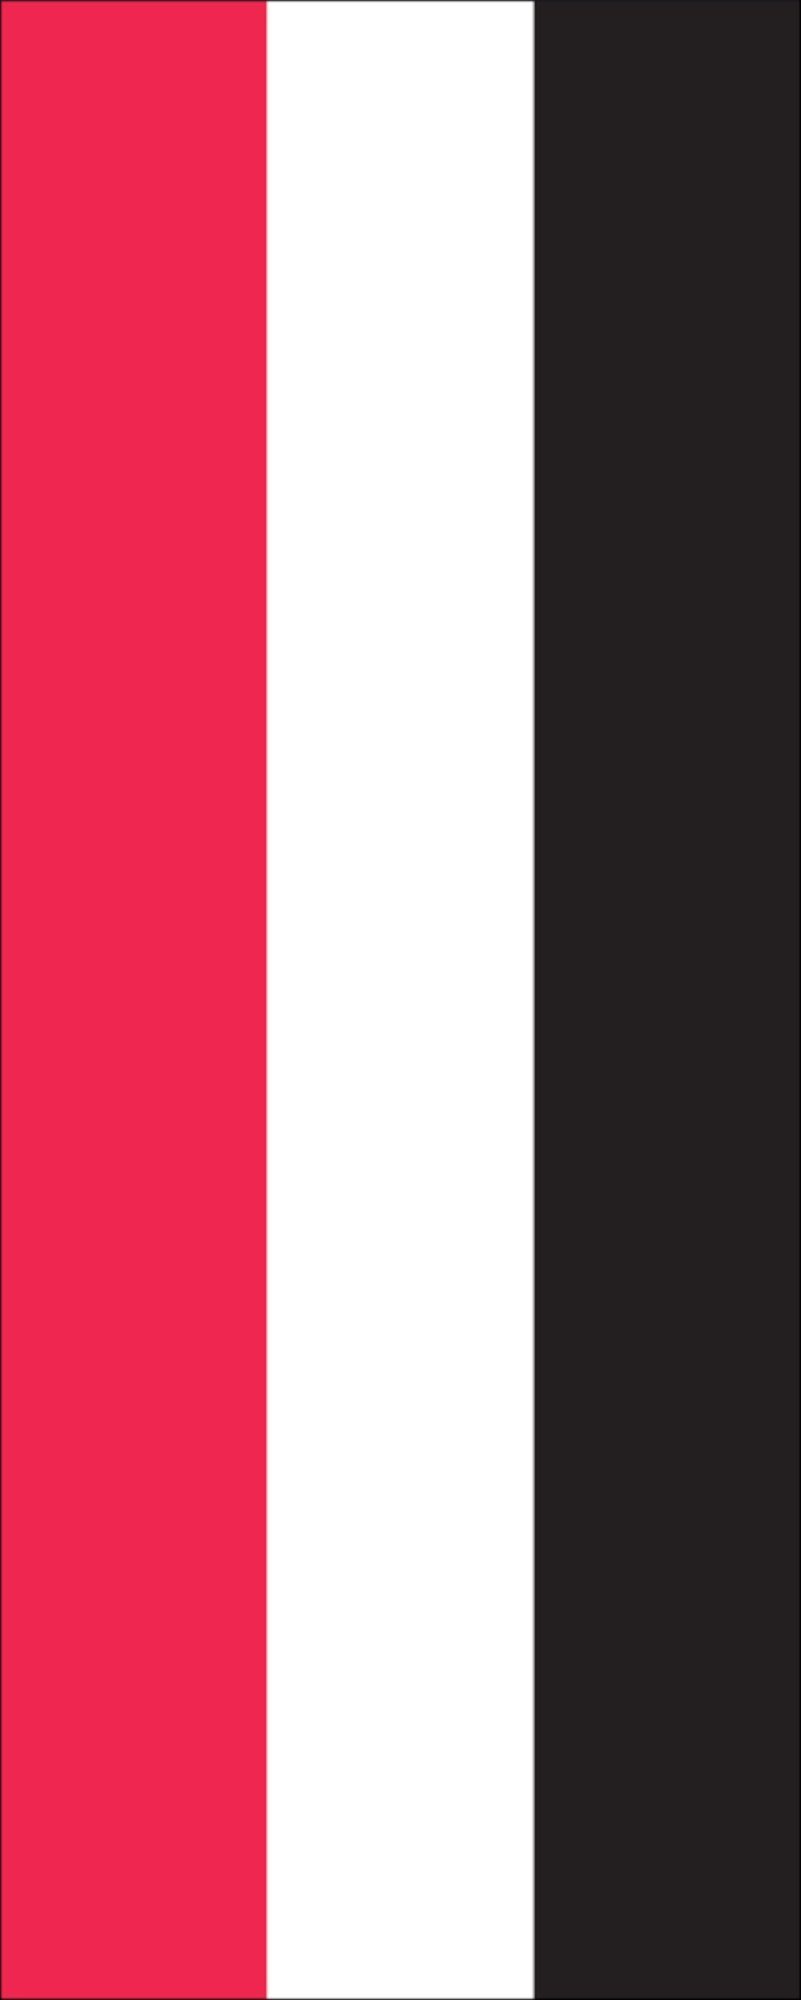 flaggenmeer Jemen g/m² Flagge 110 Hochformat Flagge